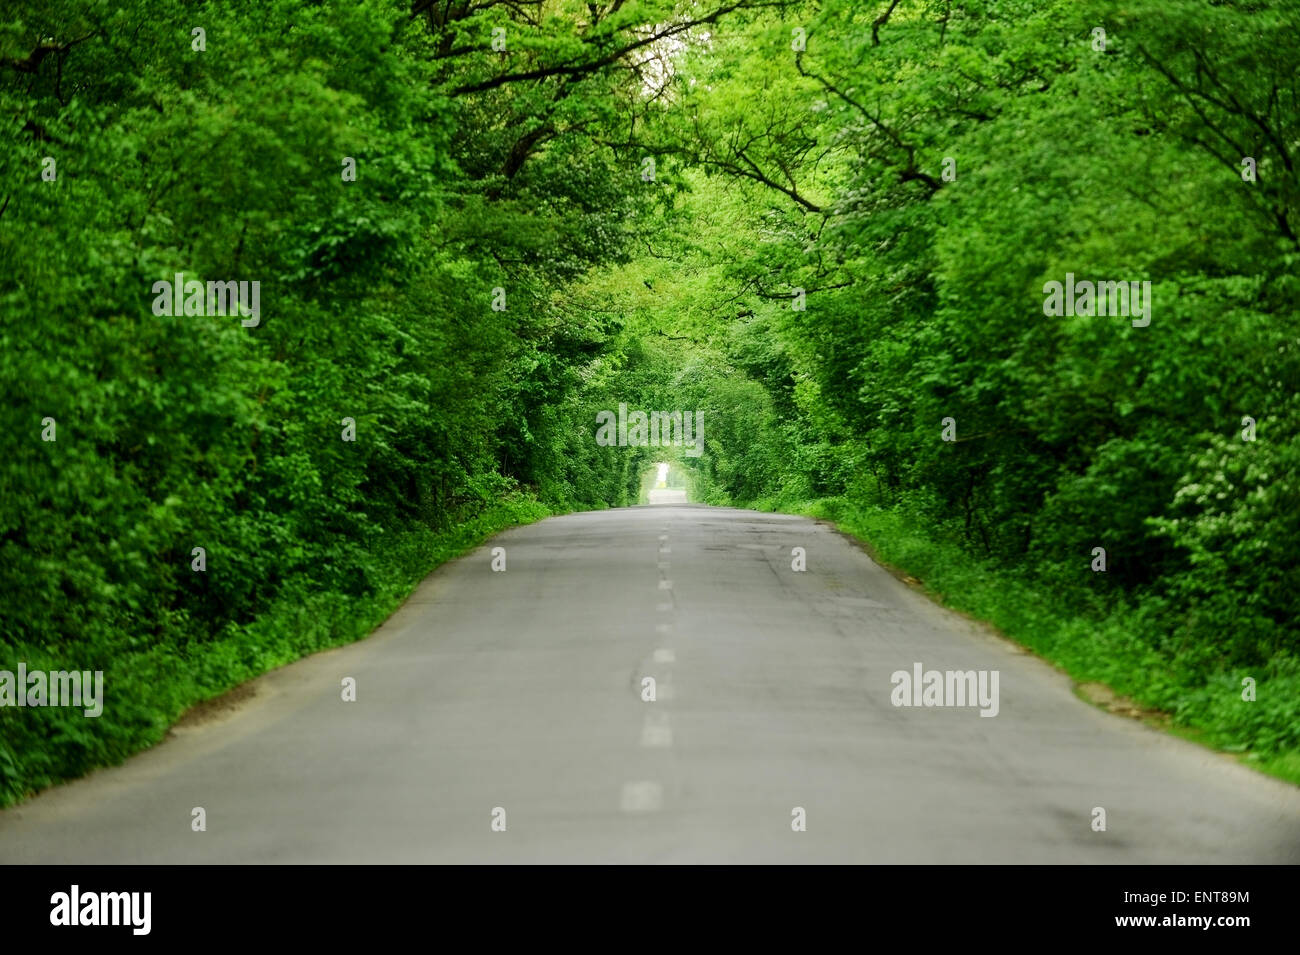 Vide route asphaltée à deux voies à travers une forêt qui ressemble à un tunnel d'arbres Banque D'Images